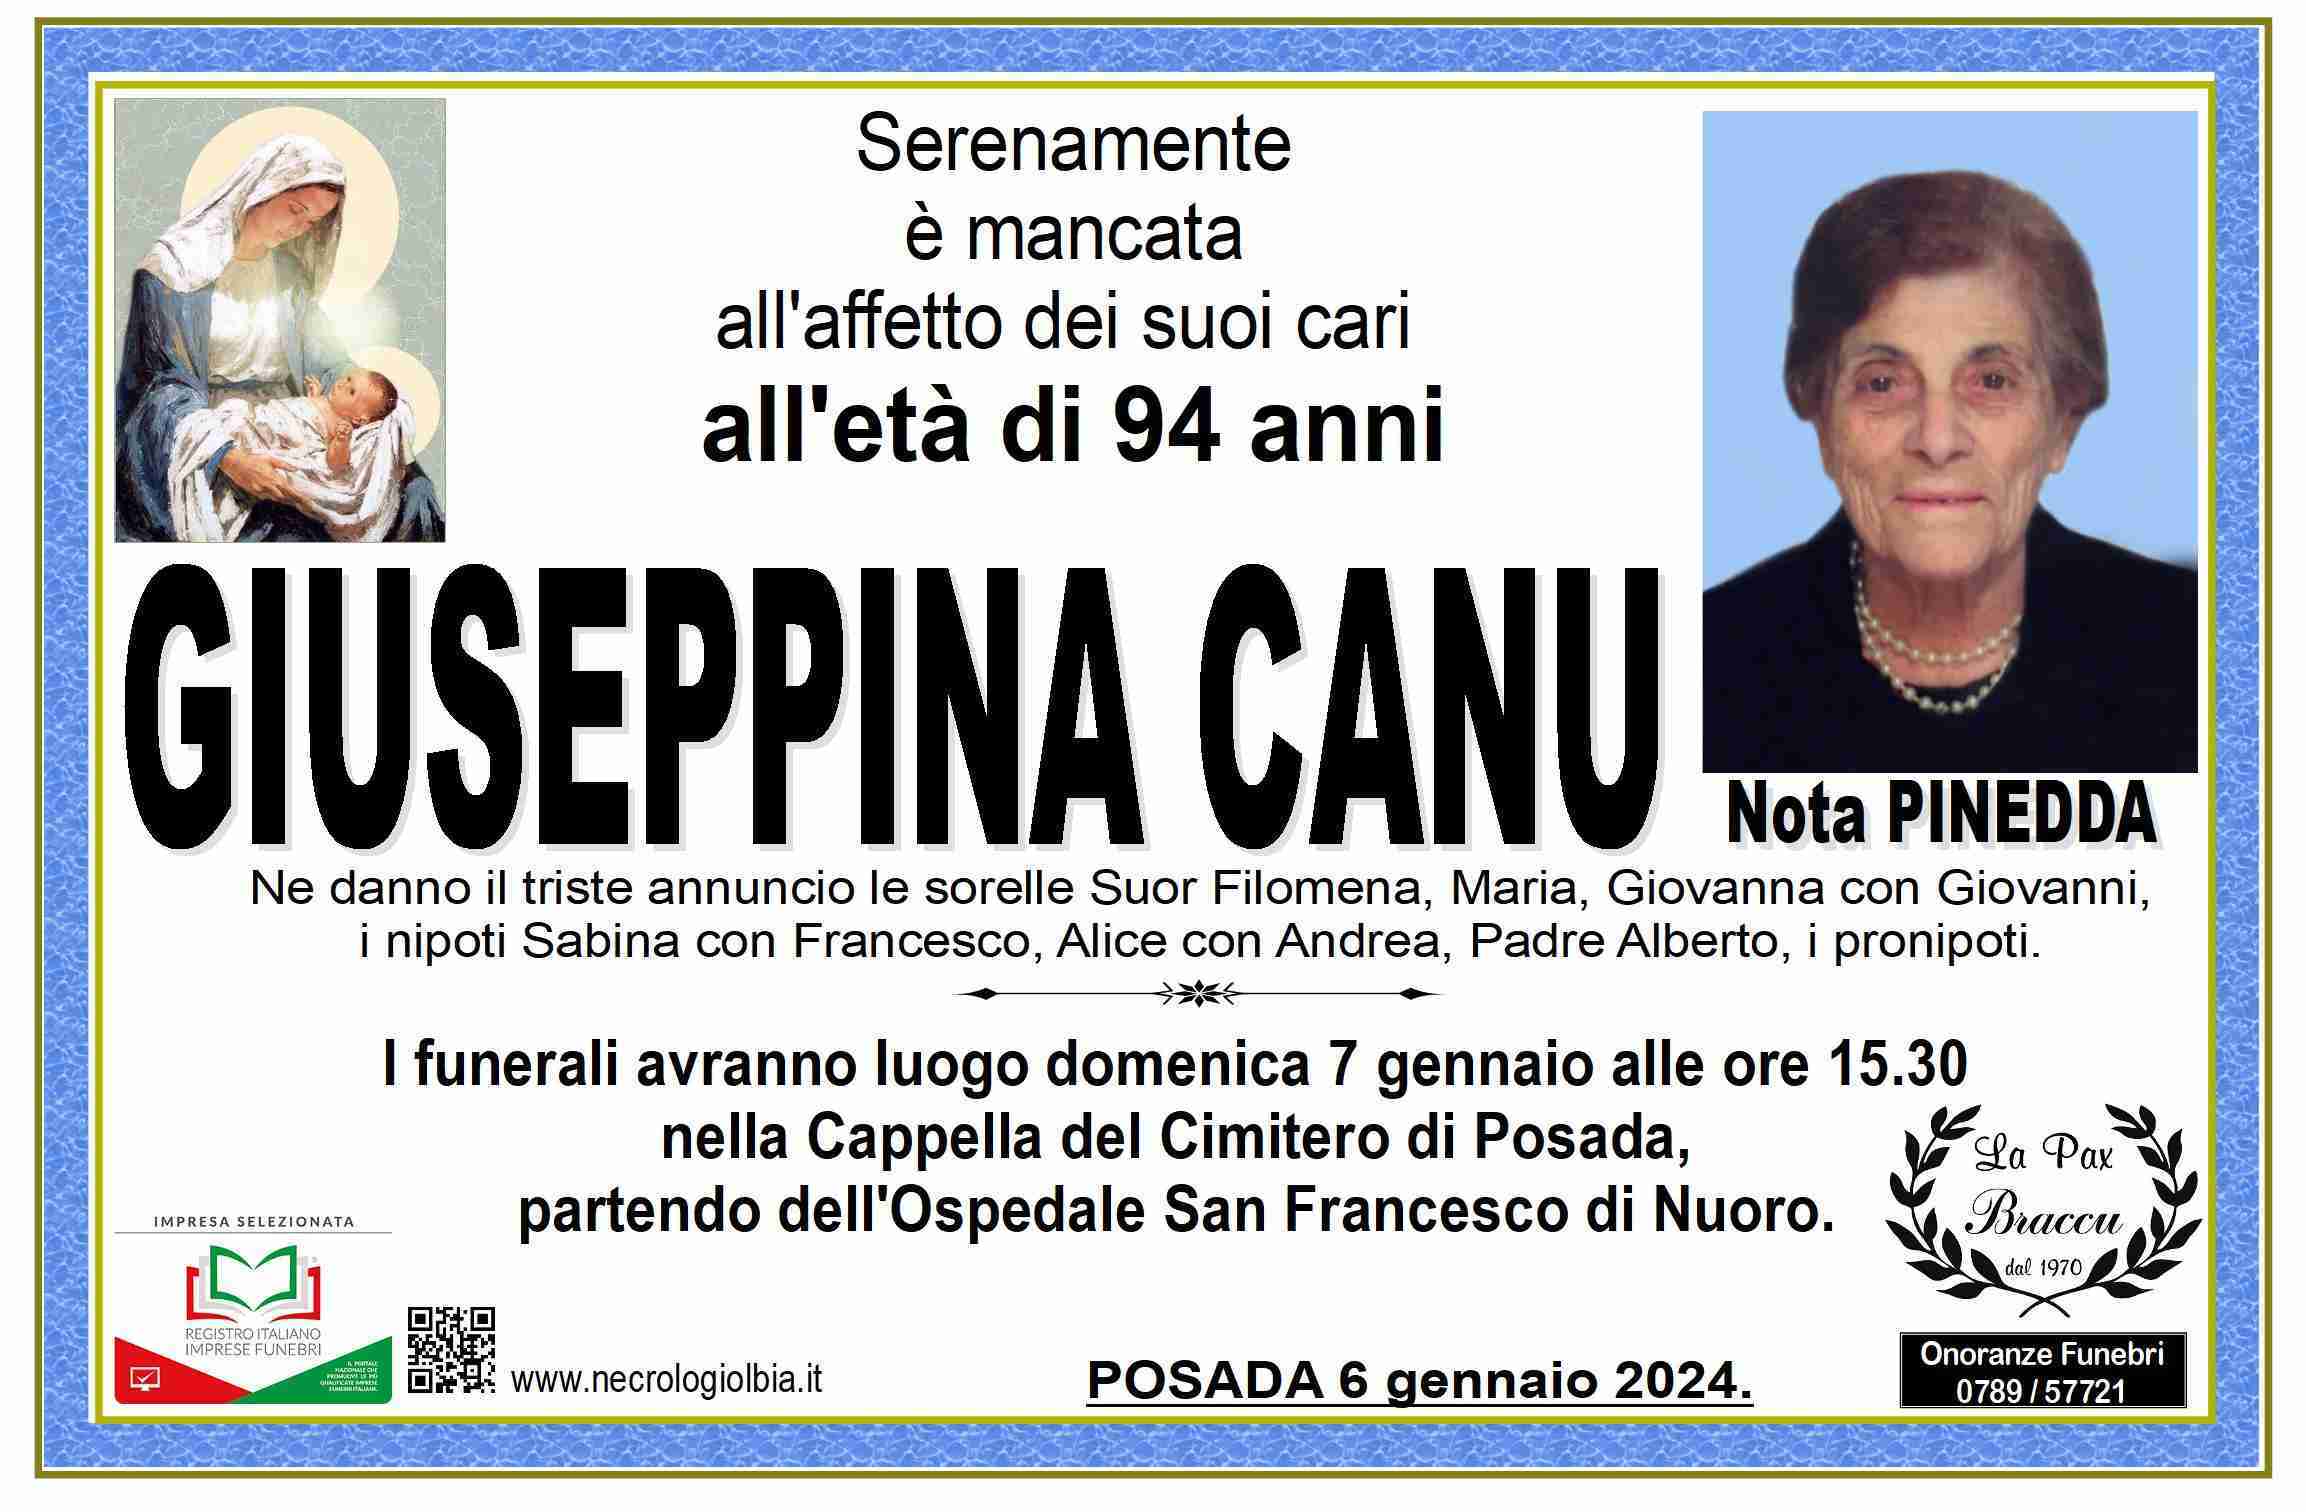 Giuseppina Canu